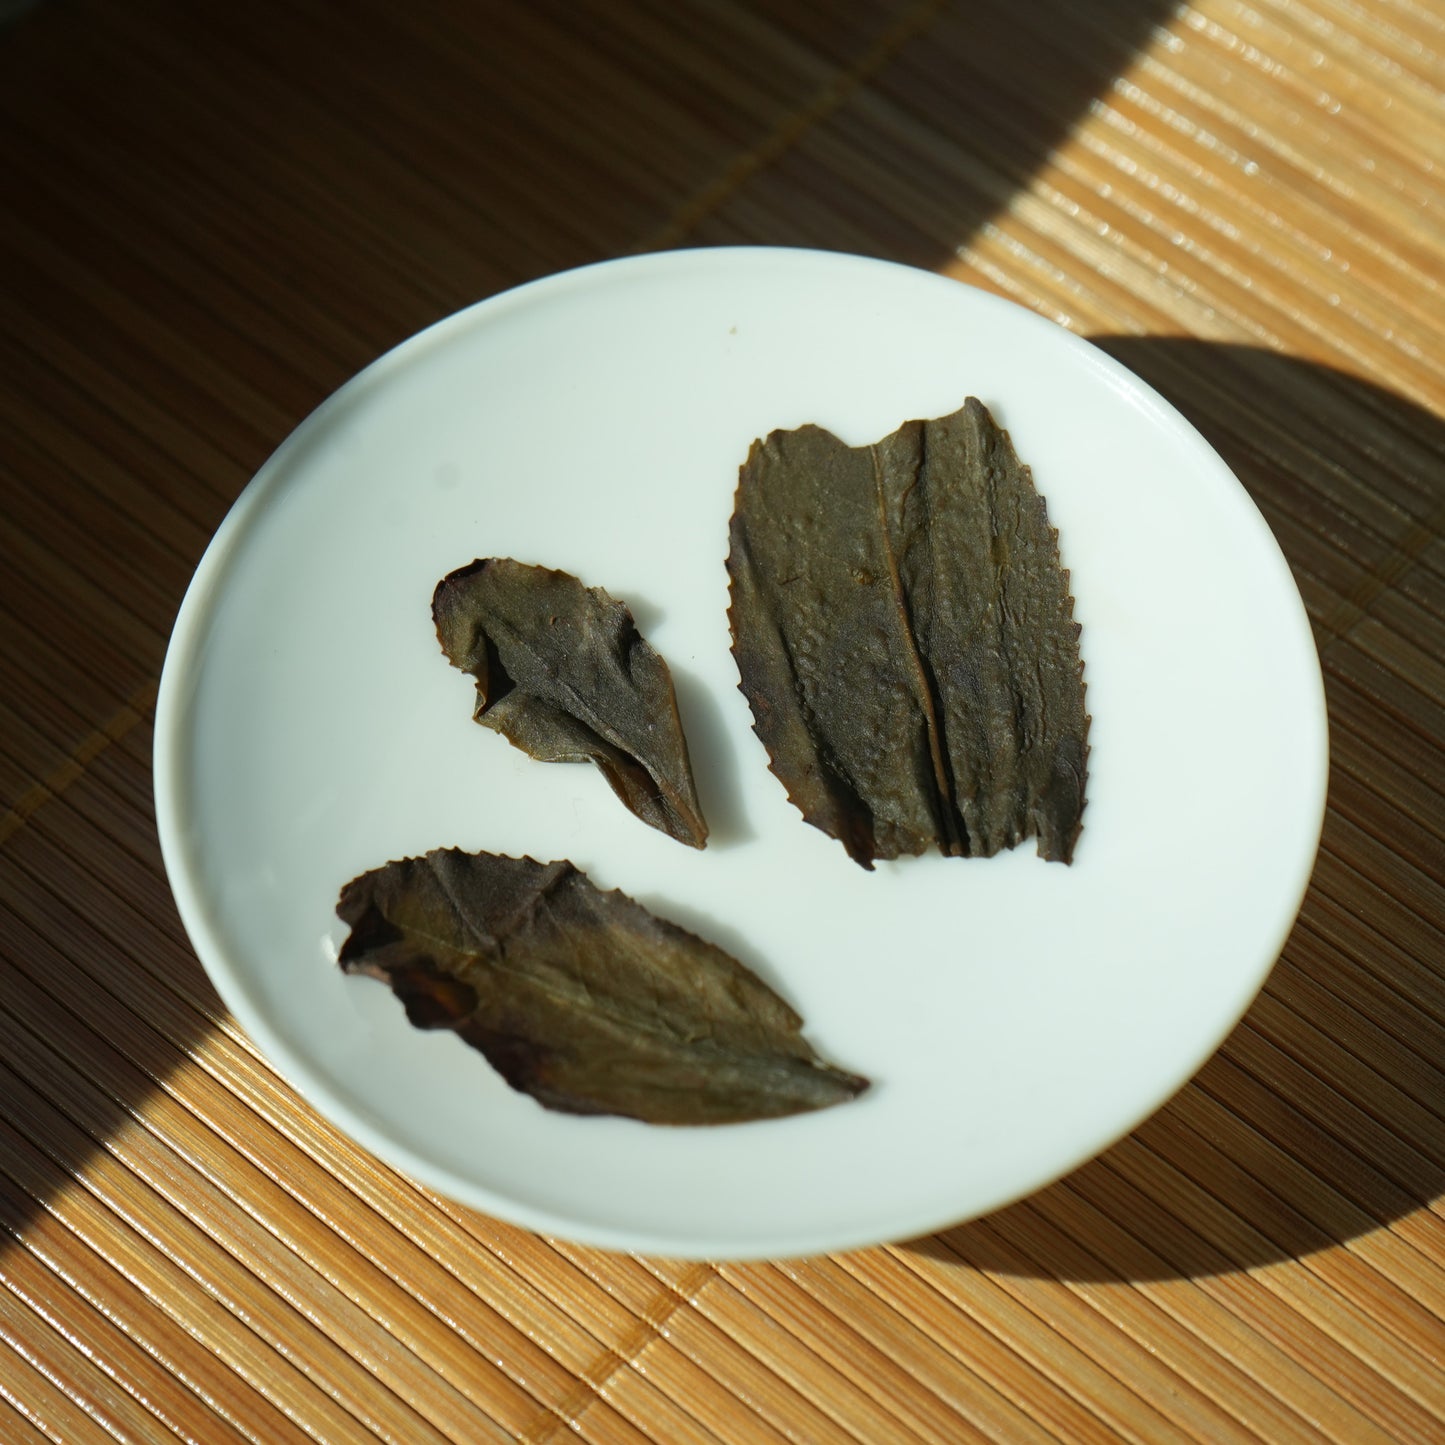 Brewed Da Hong Pao Oolong tea leaves